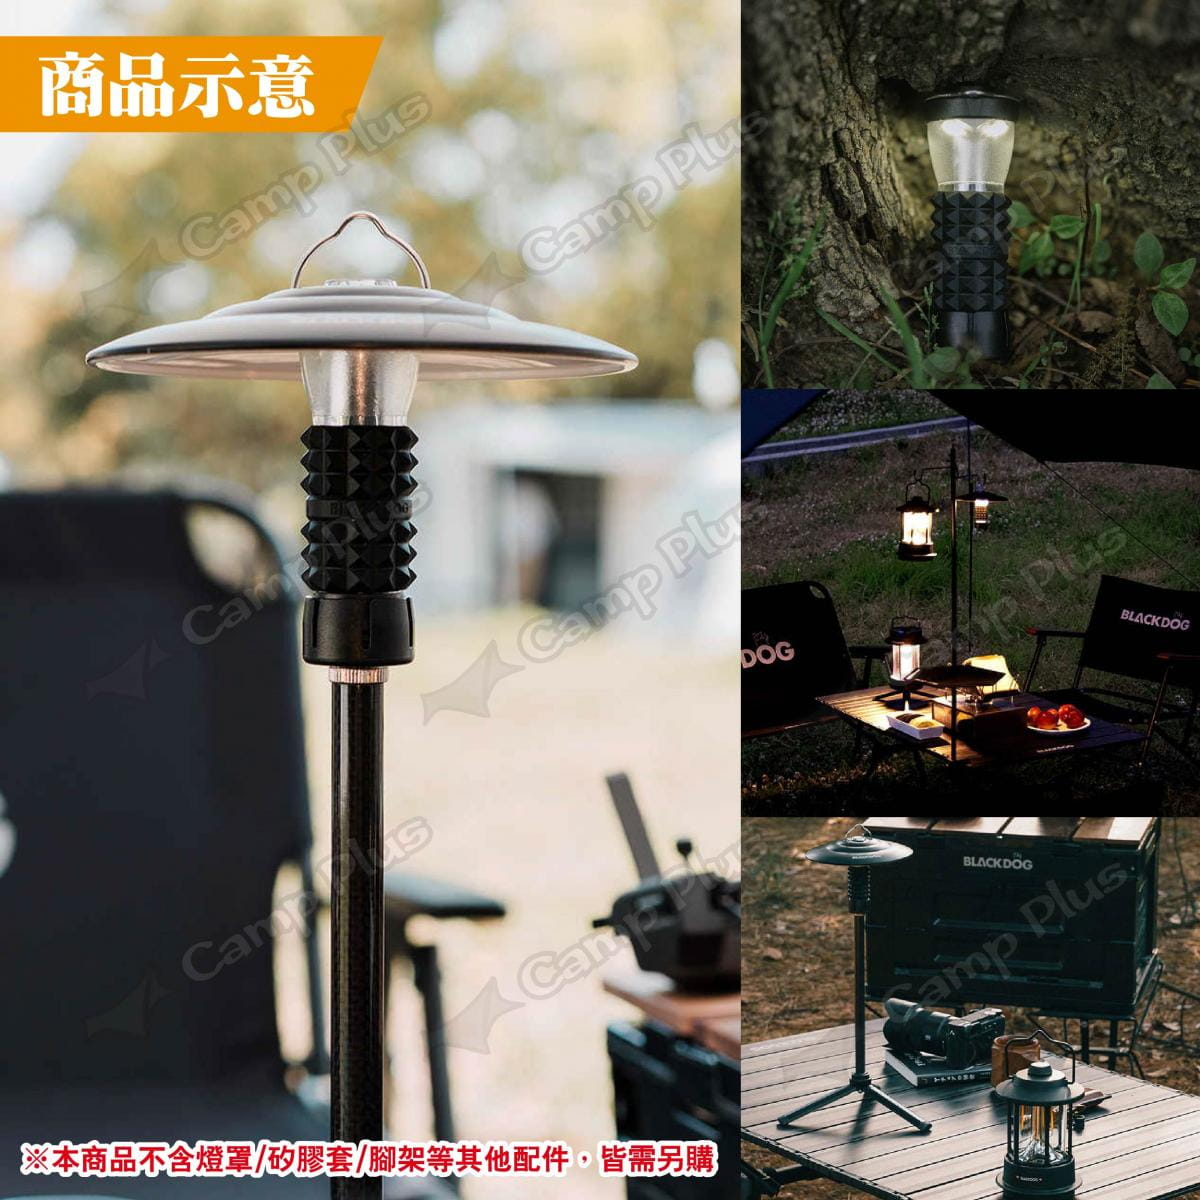 【BLACKDOG】手電筒露營燈 流光銀3.0-暖光 手電露營燈 營燈 照明燈具 露營 悠遊戶外 5